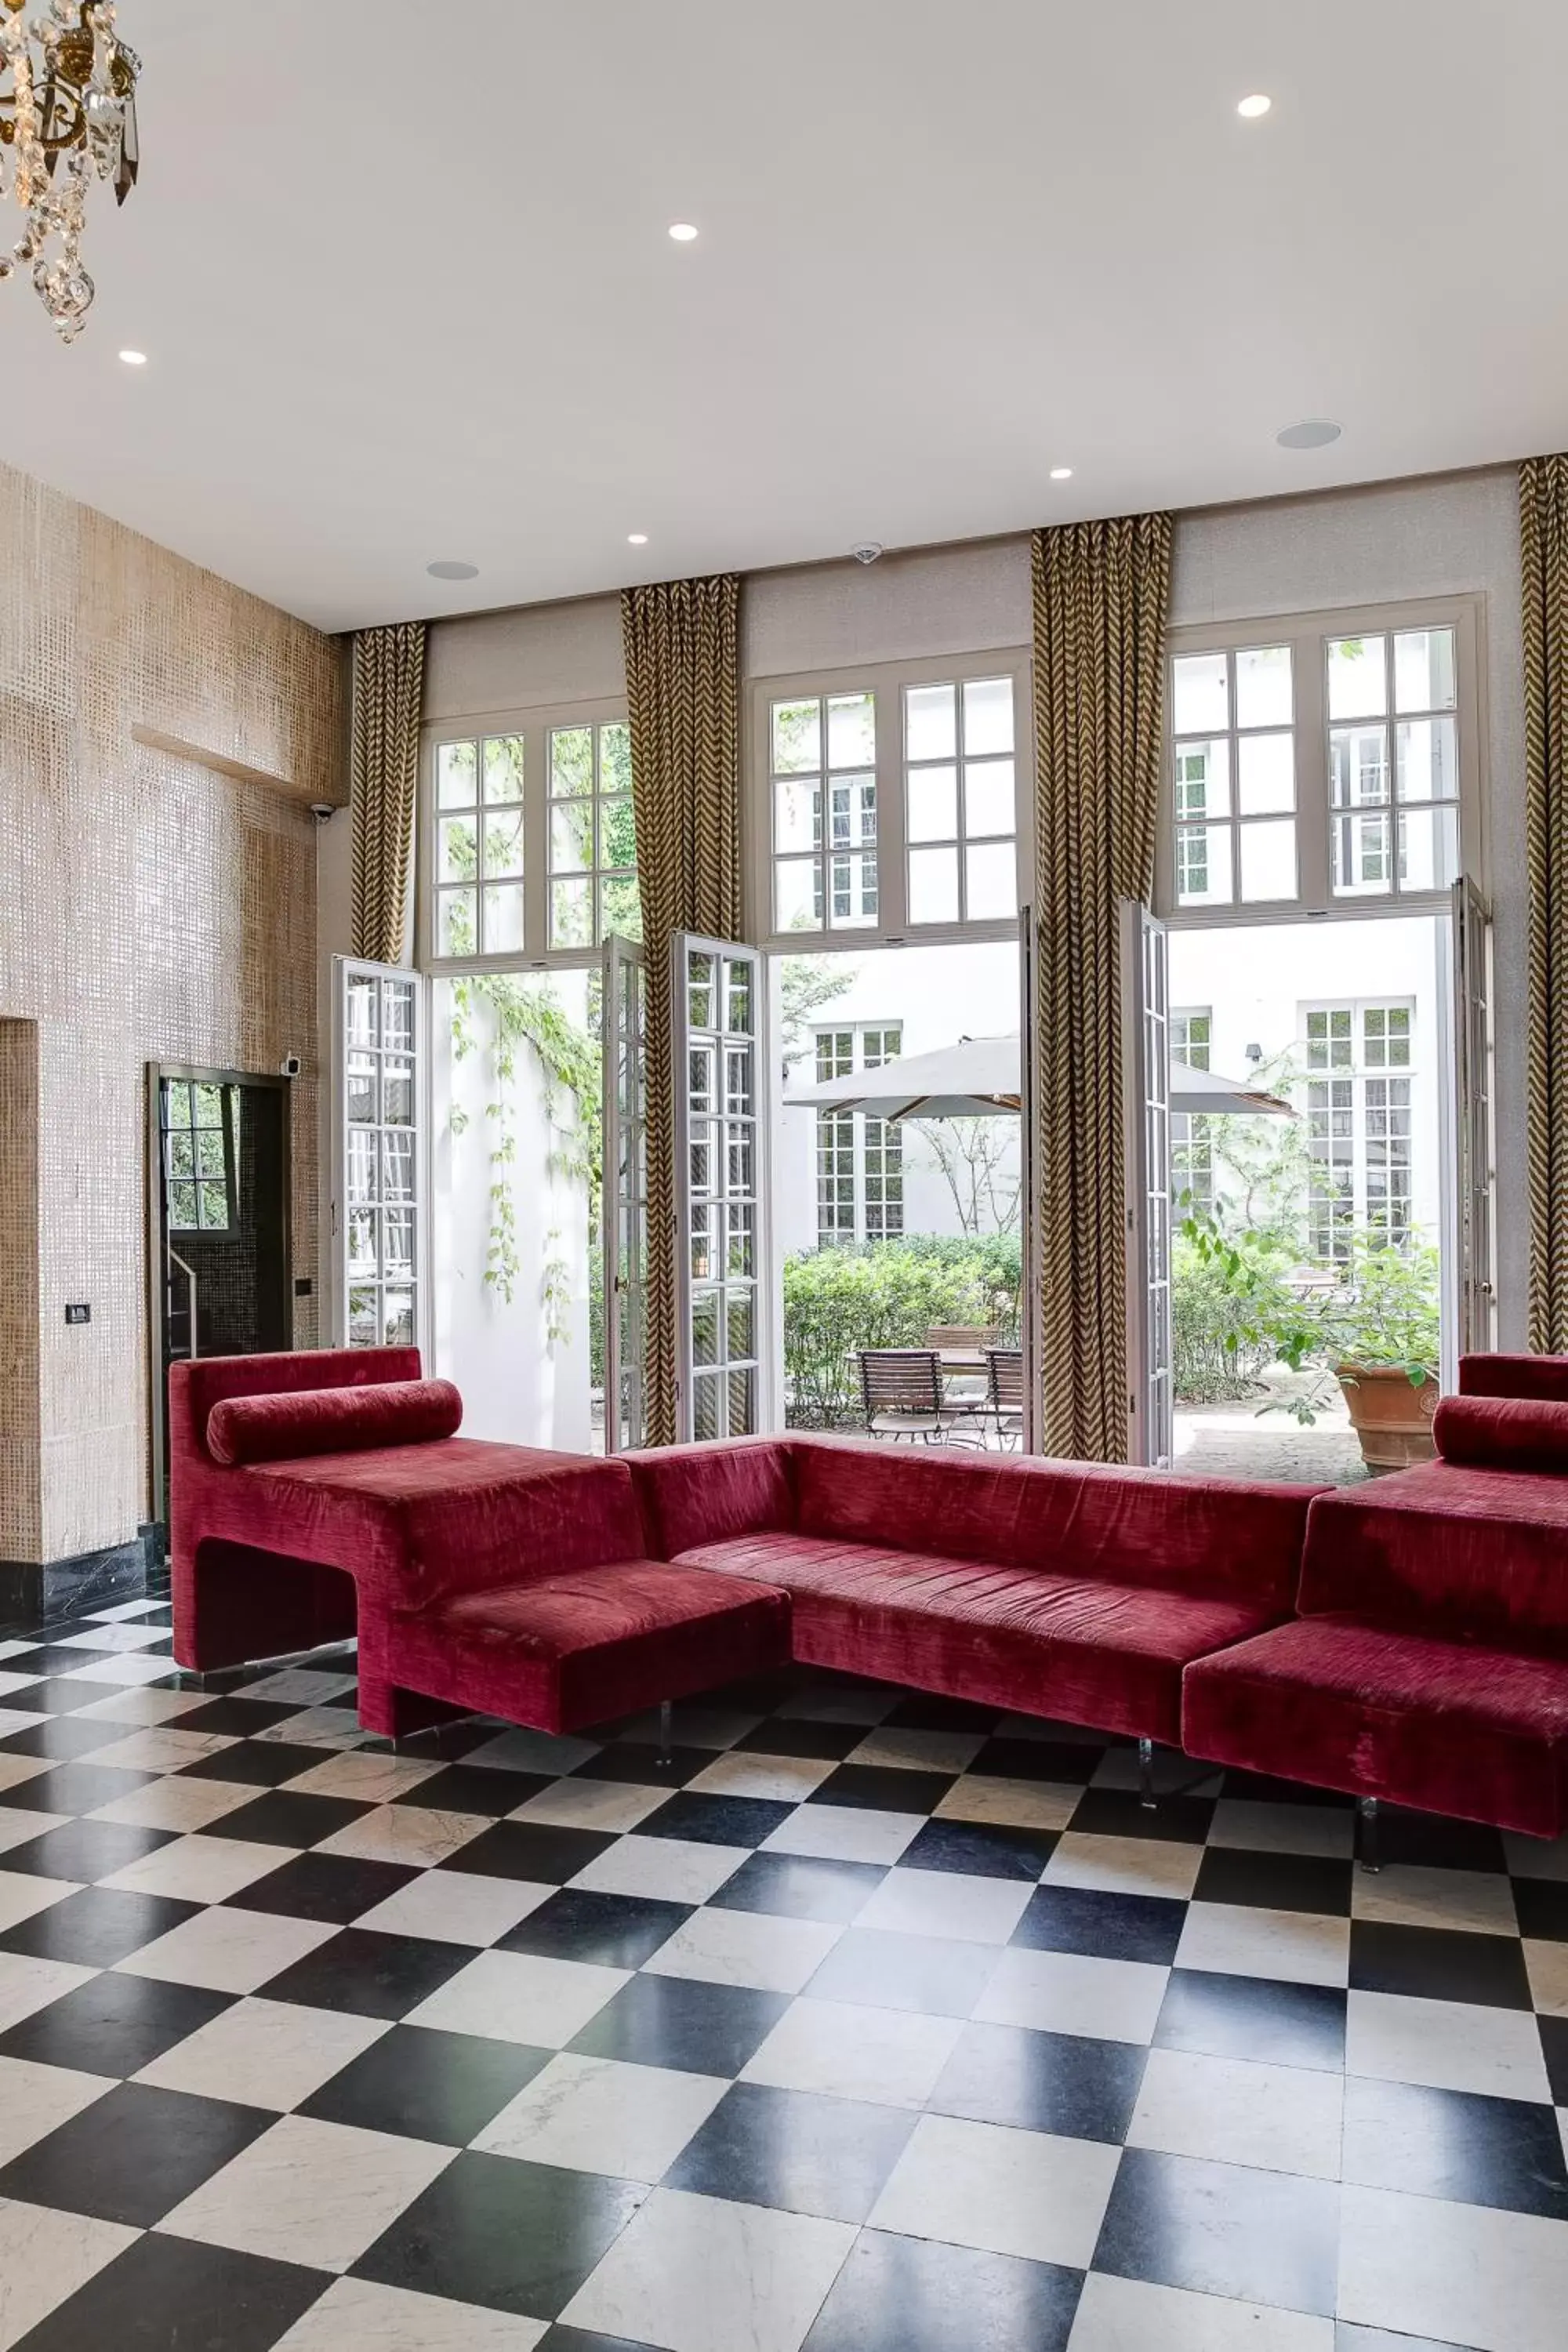 Lobby or reception in Small Luxury Hotel De Witte Lelie